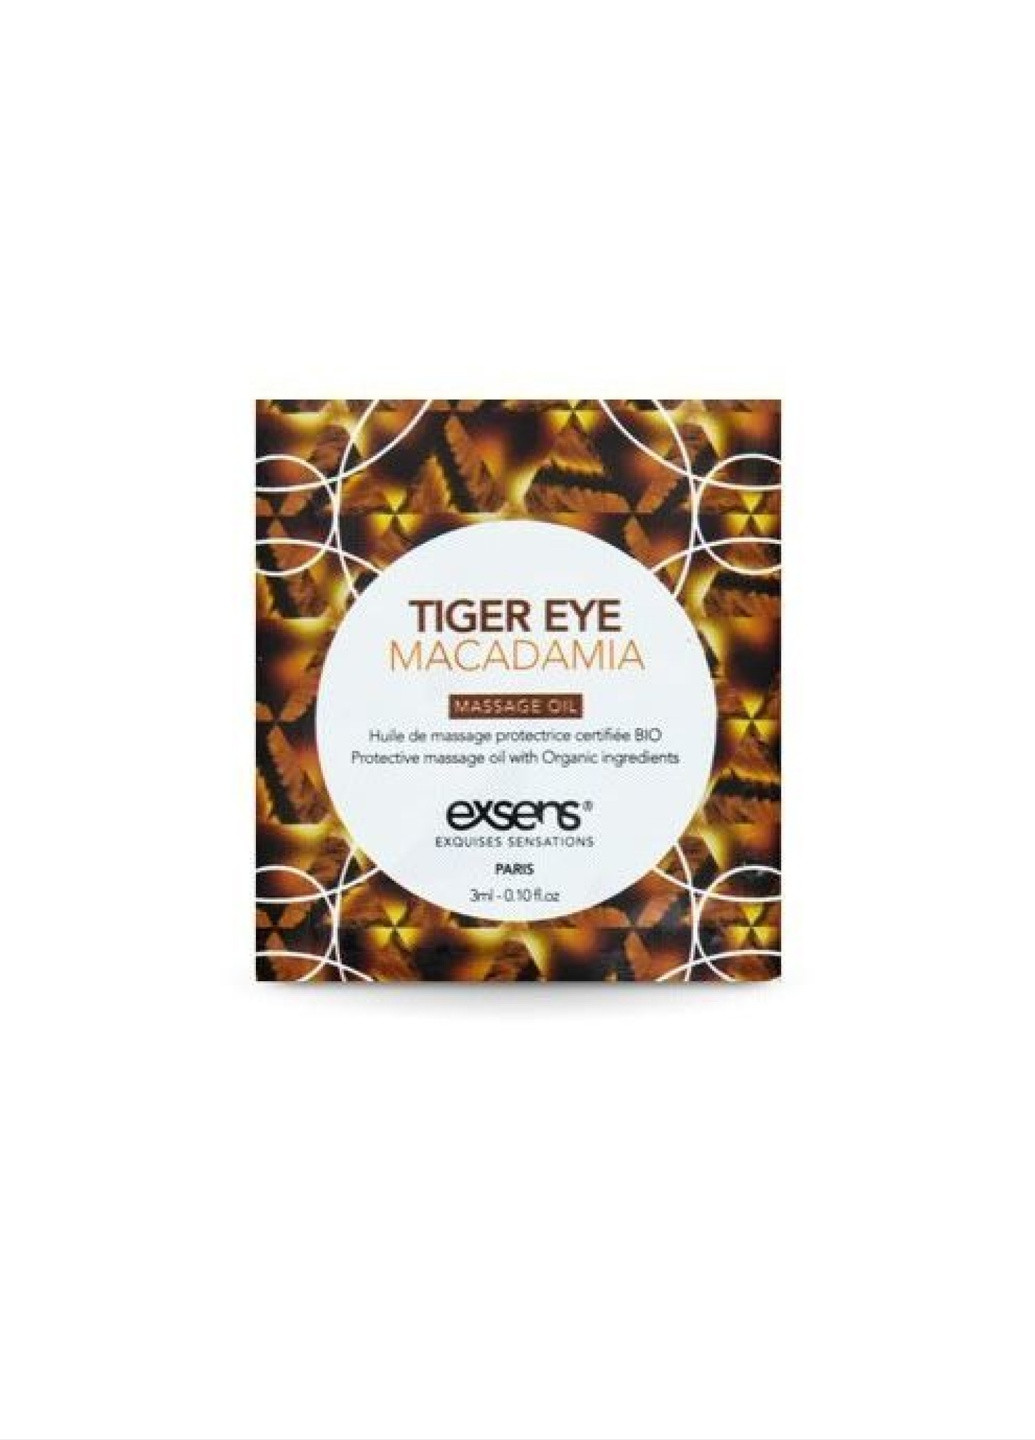 Пробник массажного масла Tiger Eye Macadamia 3мл Exsens (252660954)